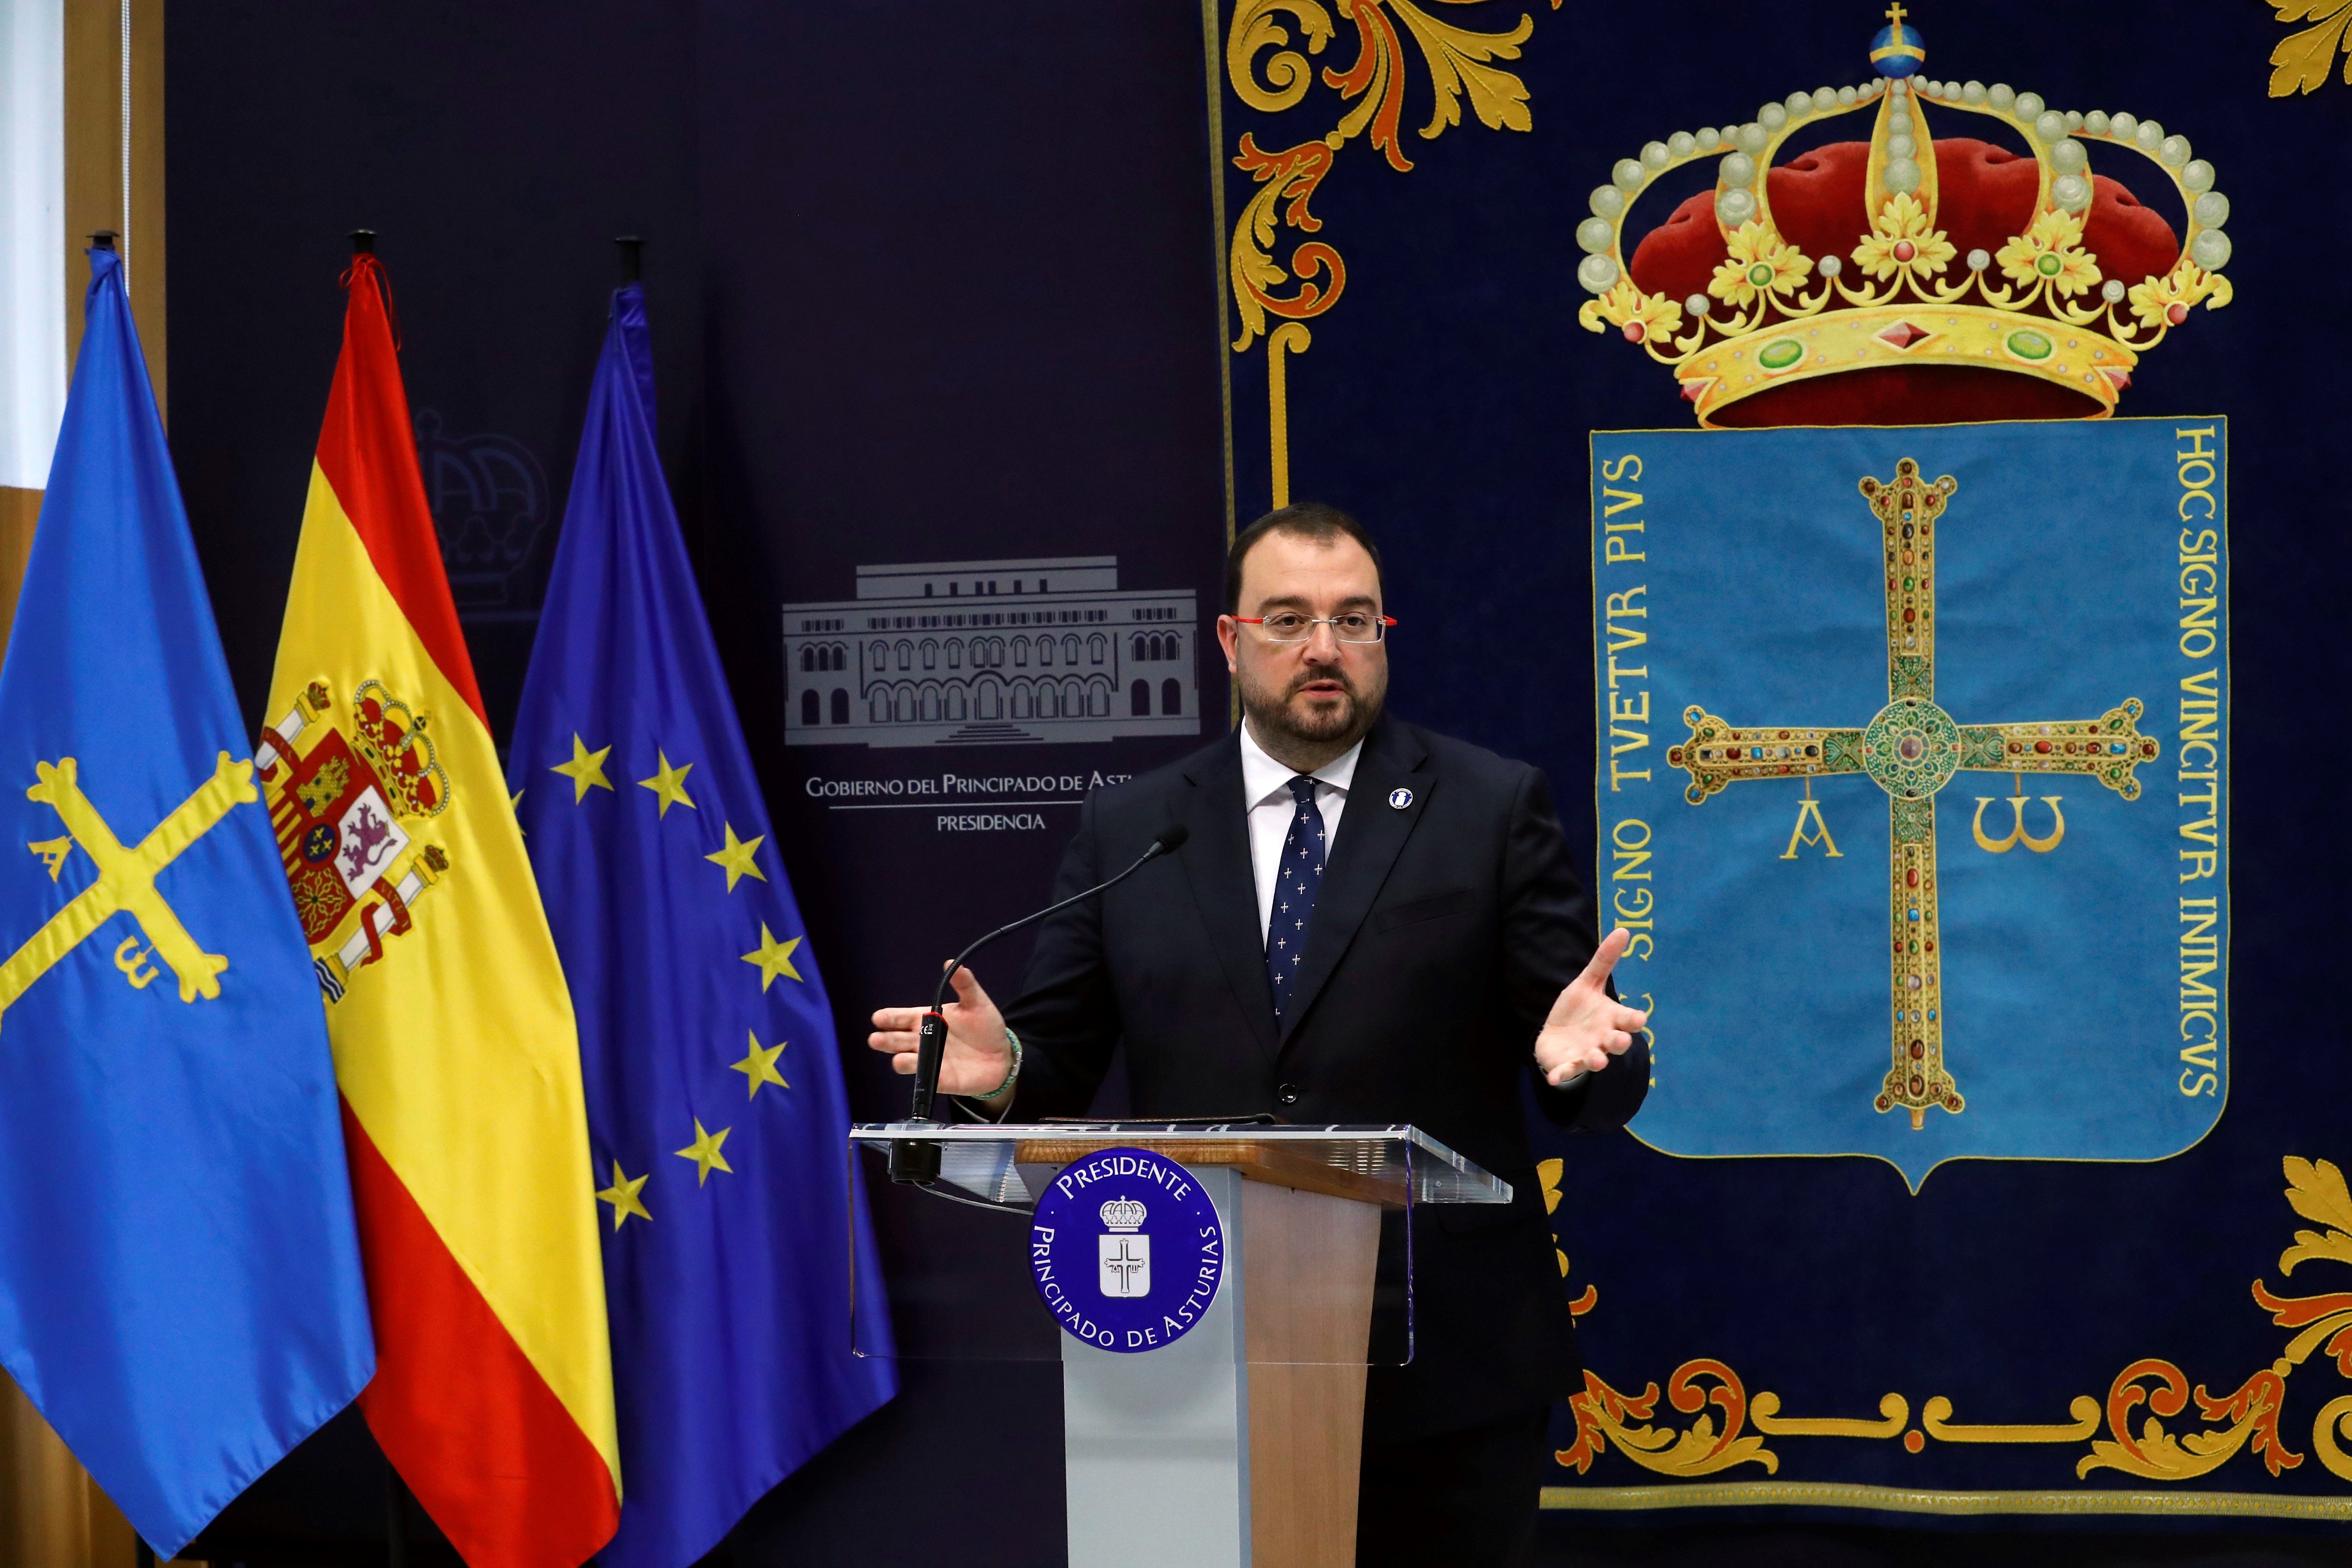 Imagen - El presidente renueva la mayor parte del gobierno para encarar la década del cambio “y construir la mejor Asturias”, con Gimena Llamedo en la vicepresidencia